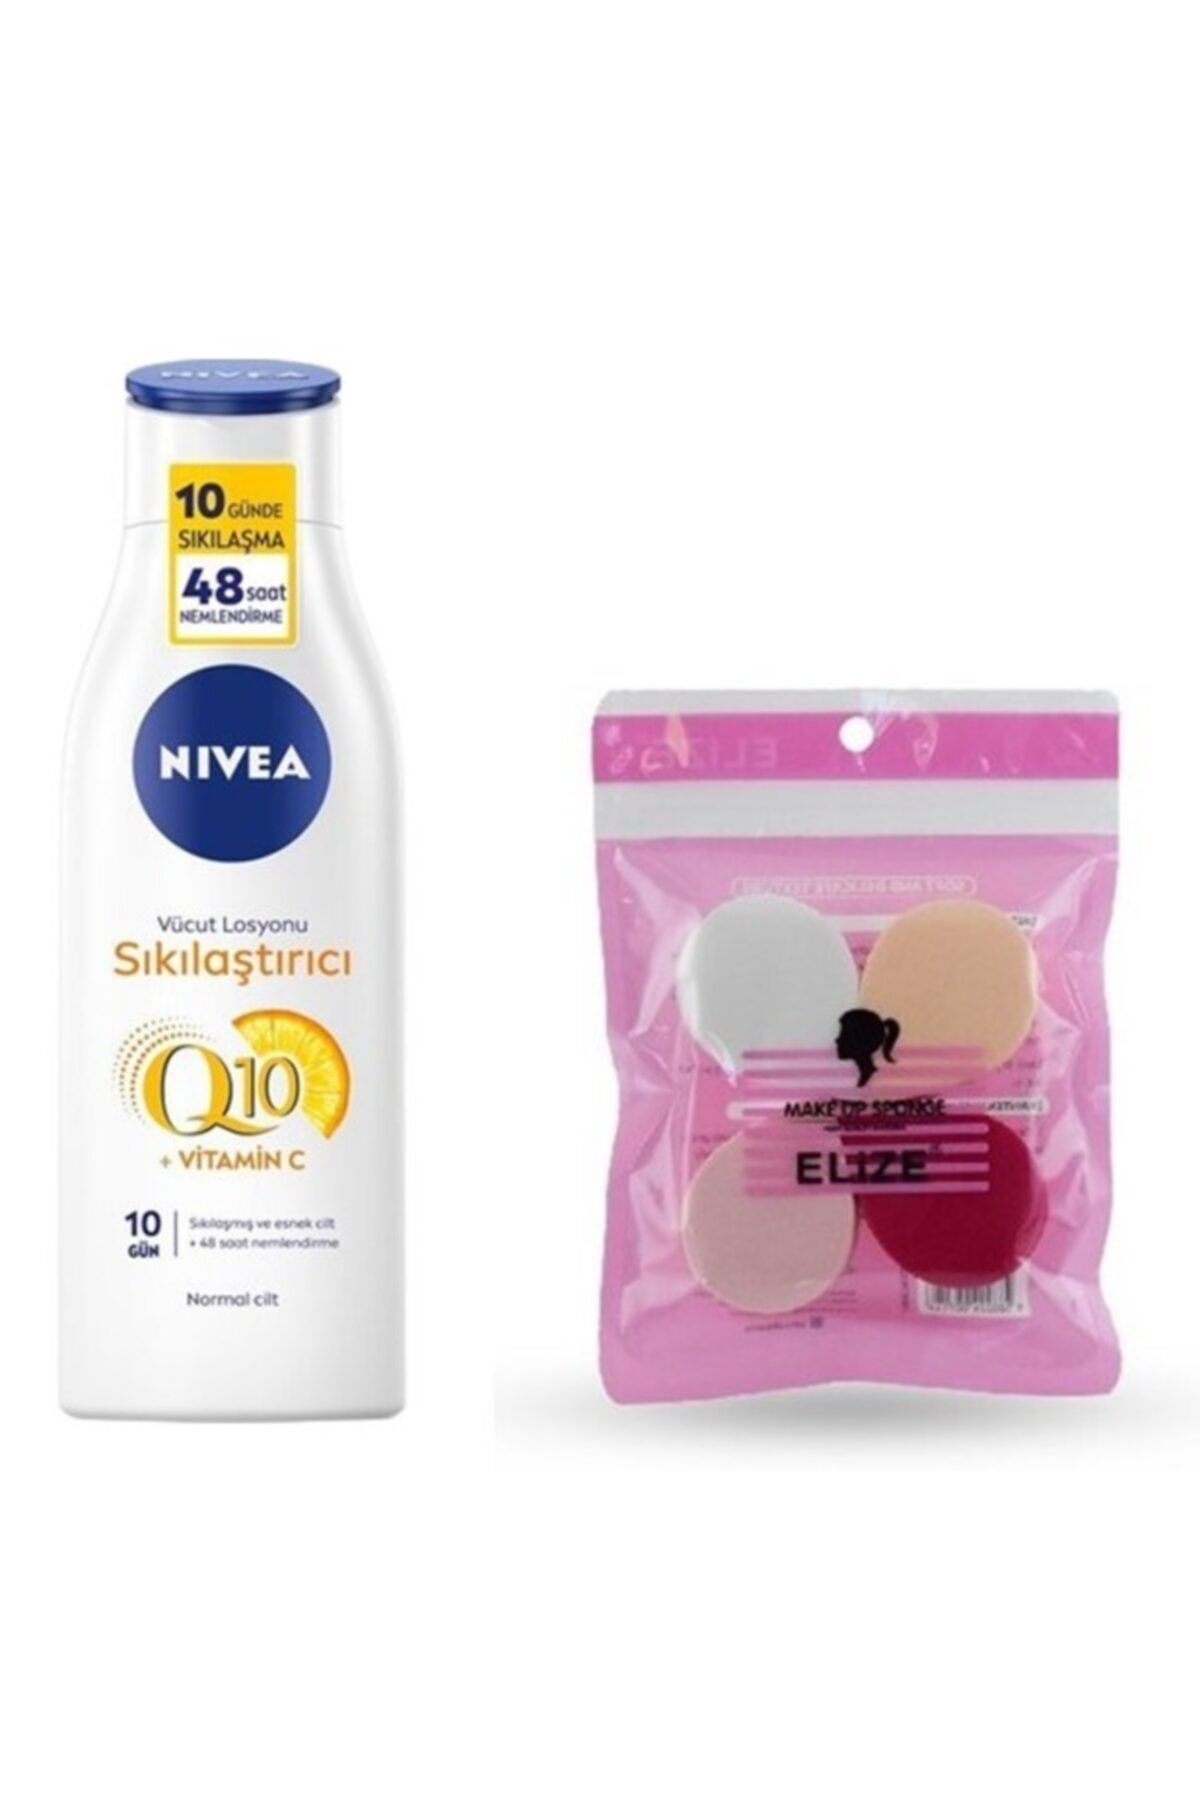 NIVEA Q10 Sıkılaştırıcı C Vitaminli Vücut Losyonu 250 ml - 4 Lü Makyaj Süngeri